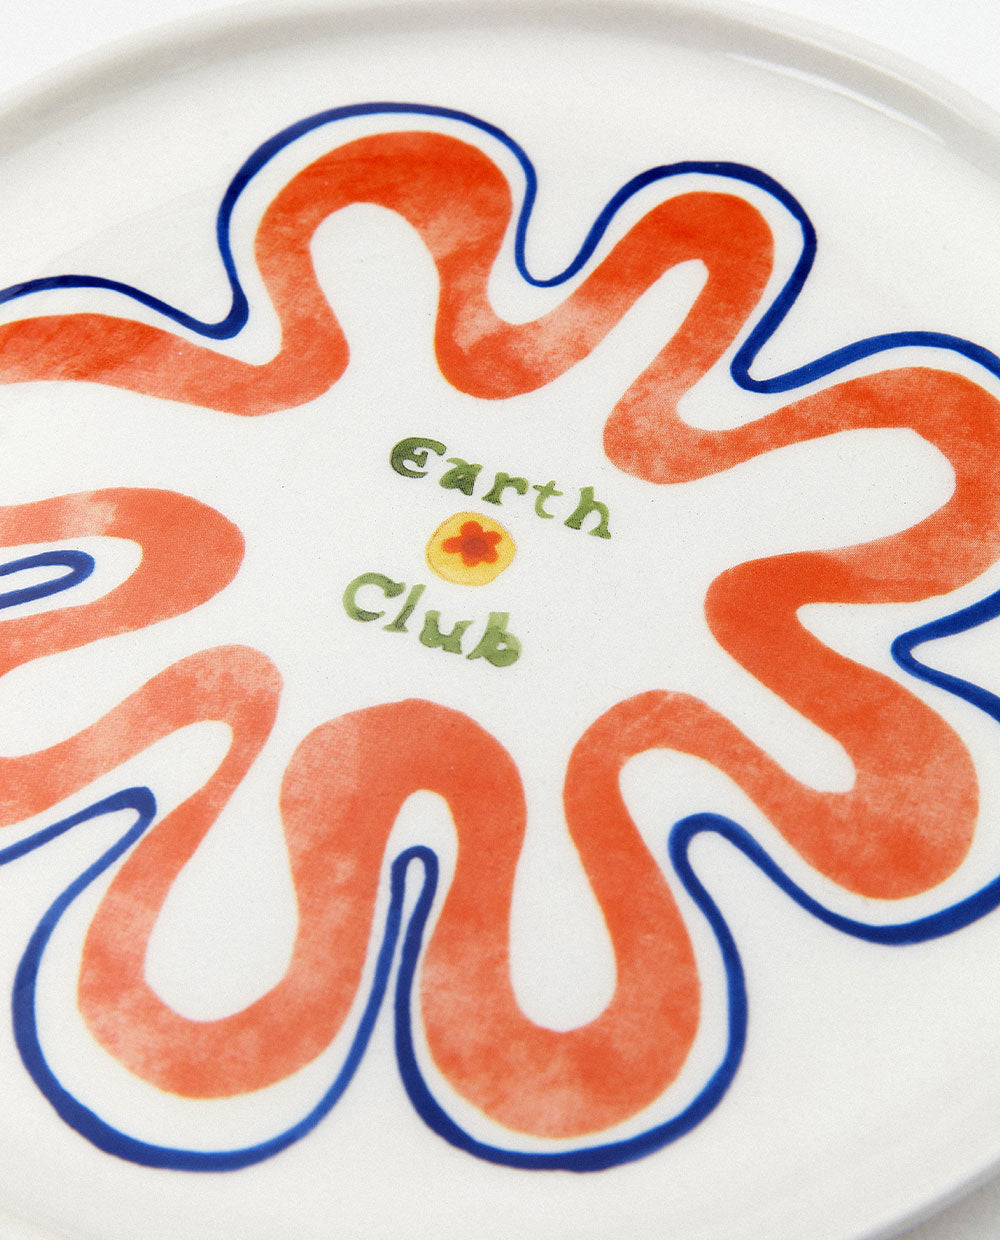 EARTH CLUB